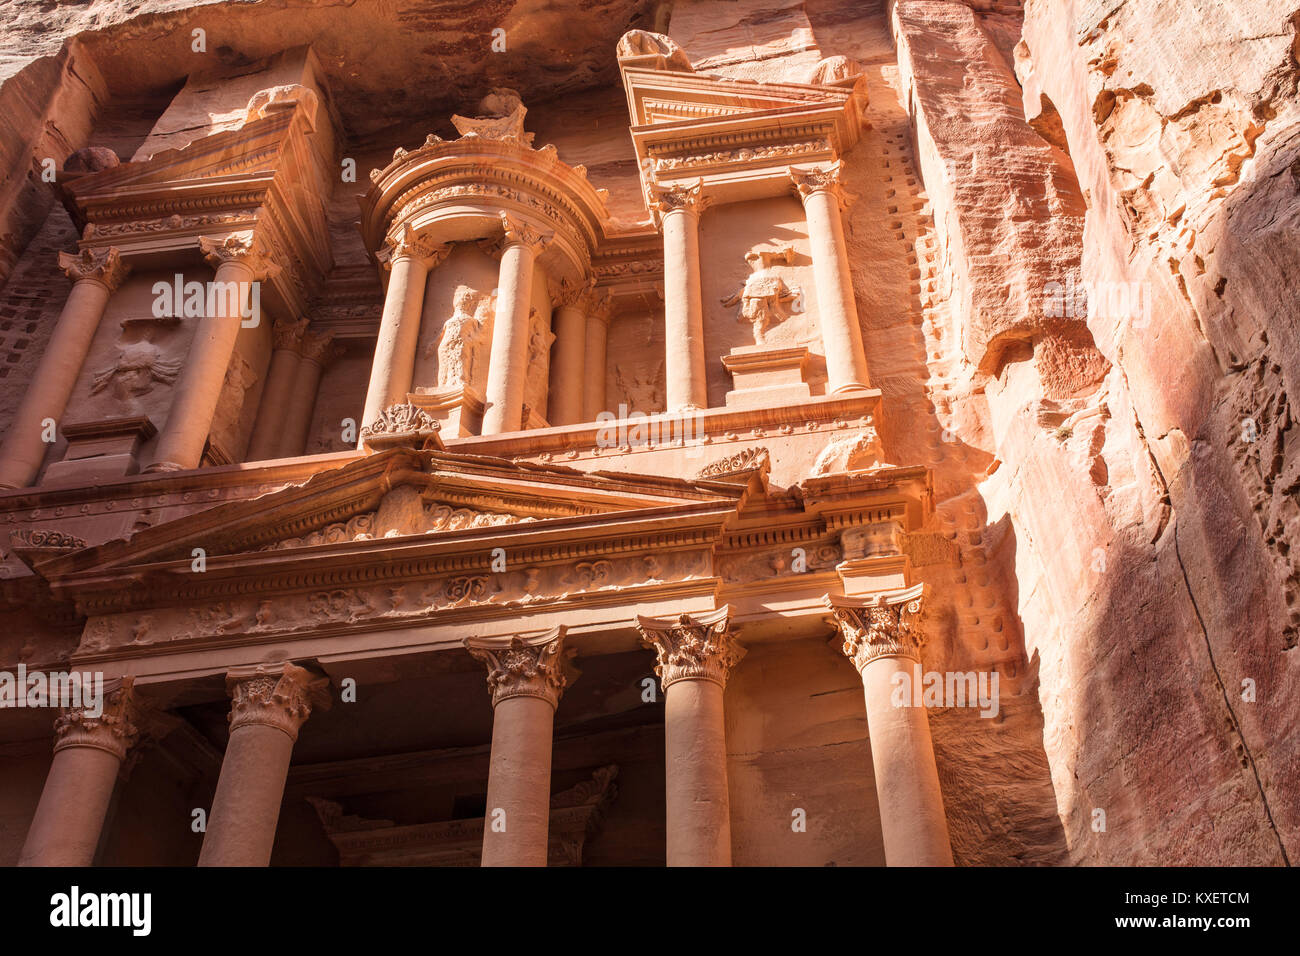 La ciudad perdida de Petra. Foto de stock